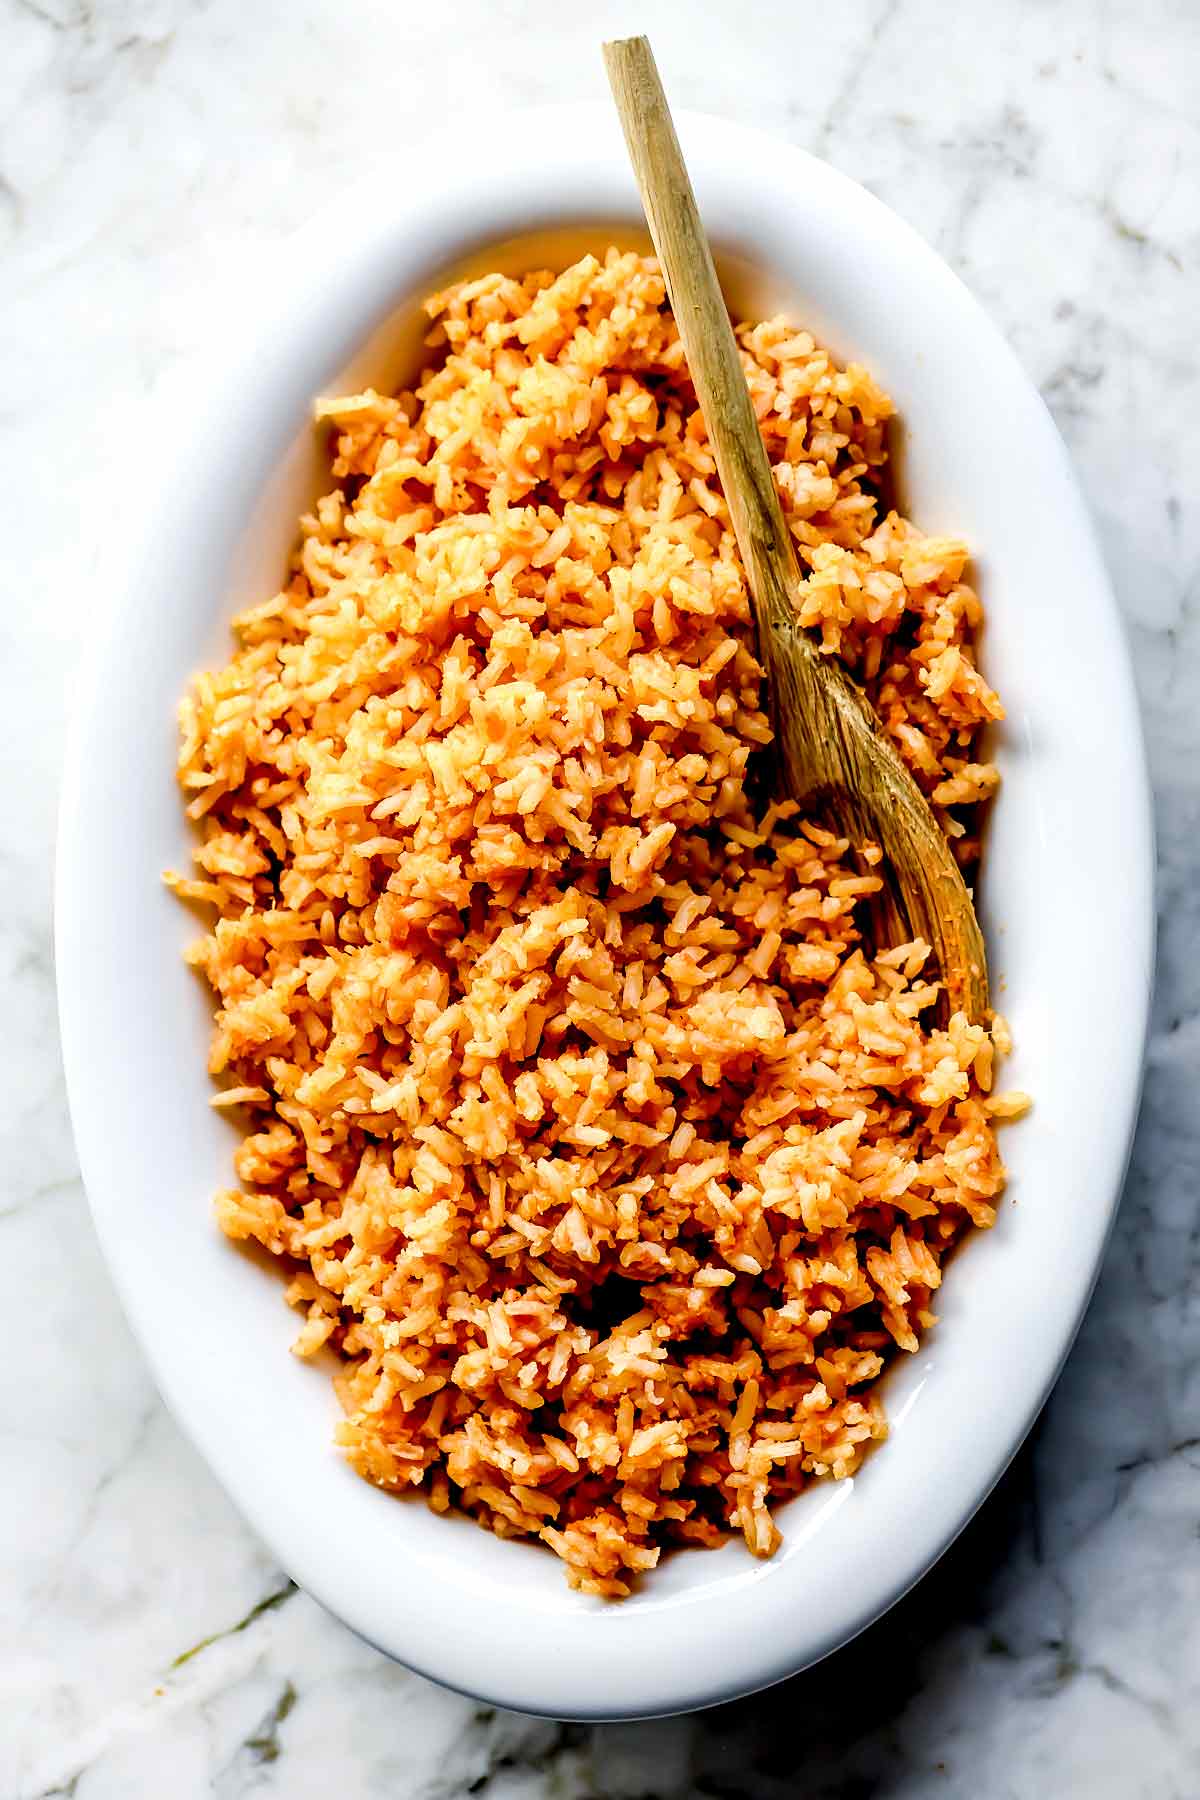 https://www.foodiecrush.com/wp-content/uploads/2021/04/Spanish-Rice-foodiecrush.com-007.jpg